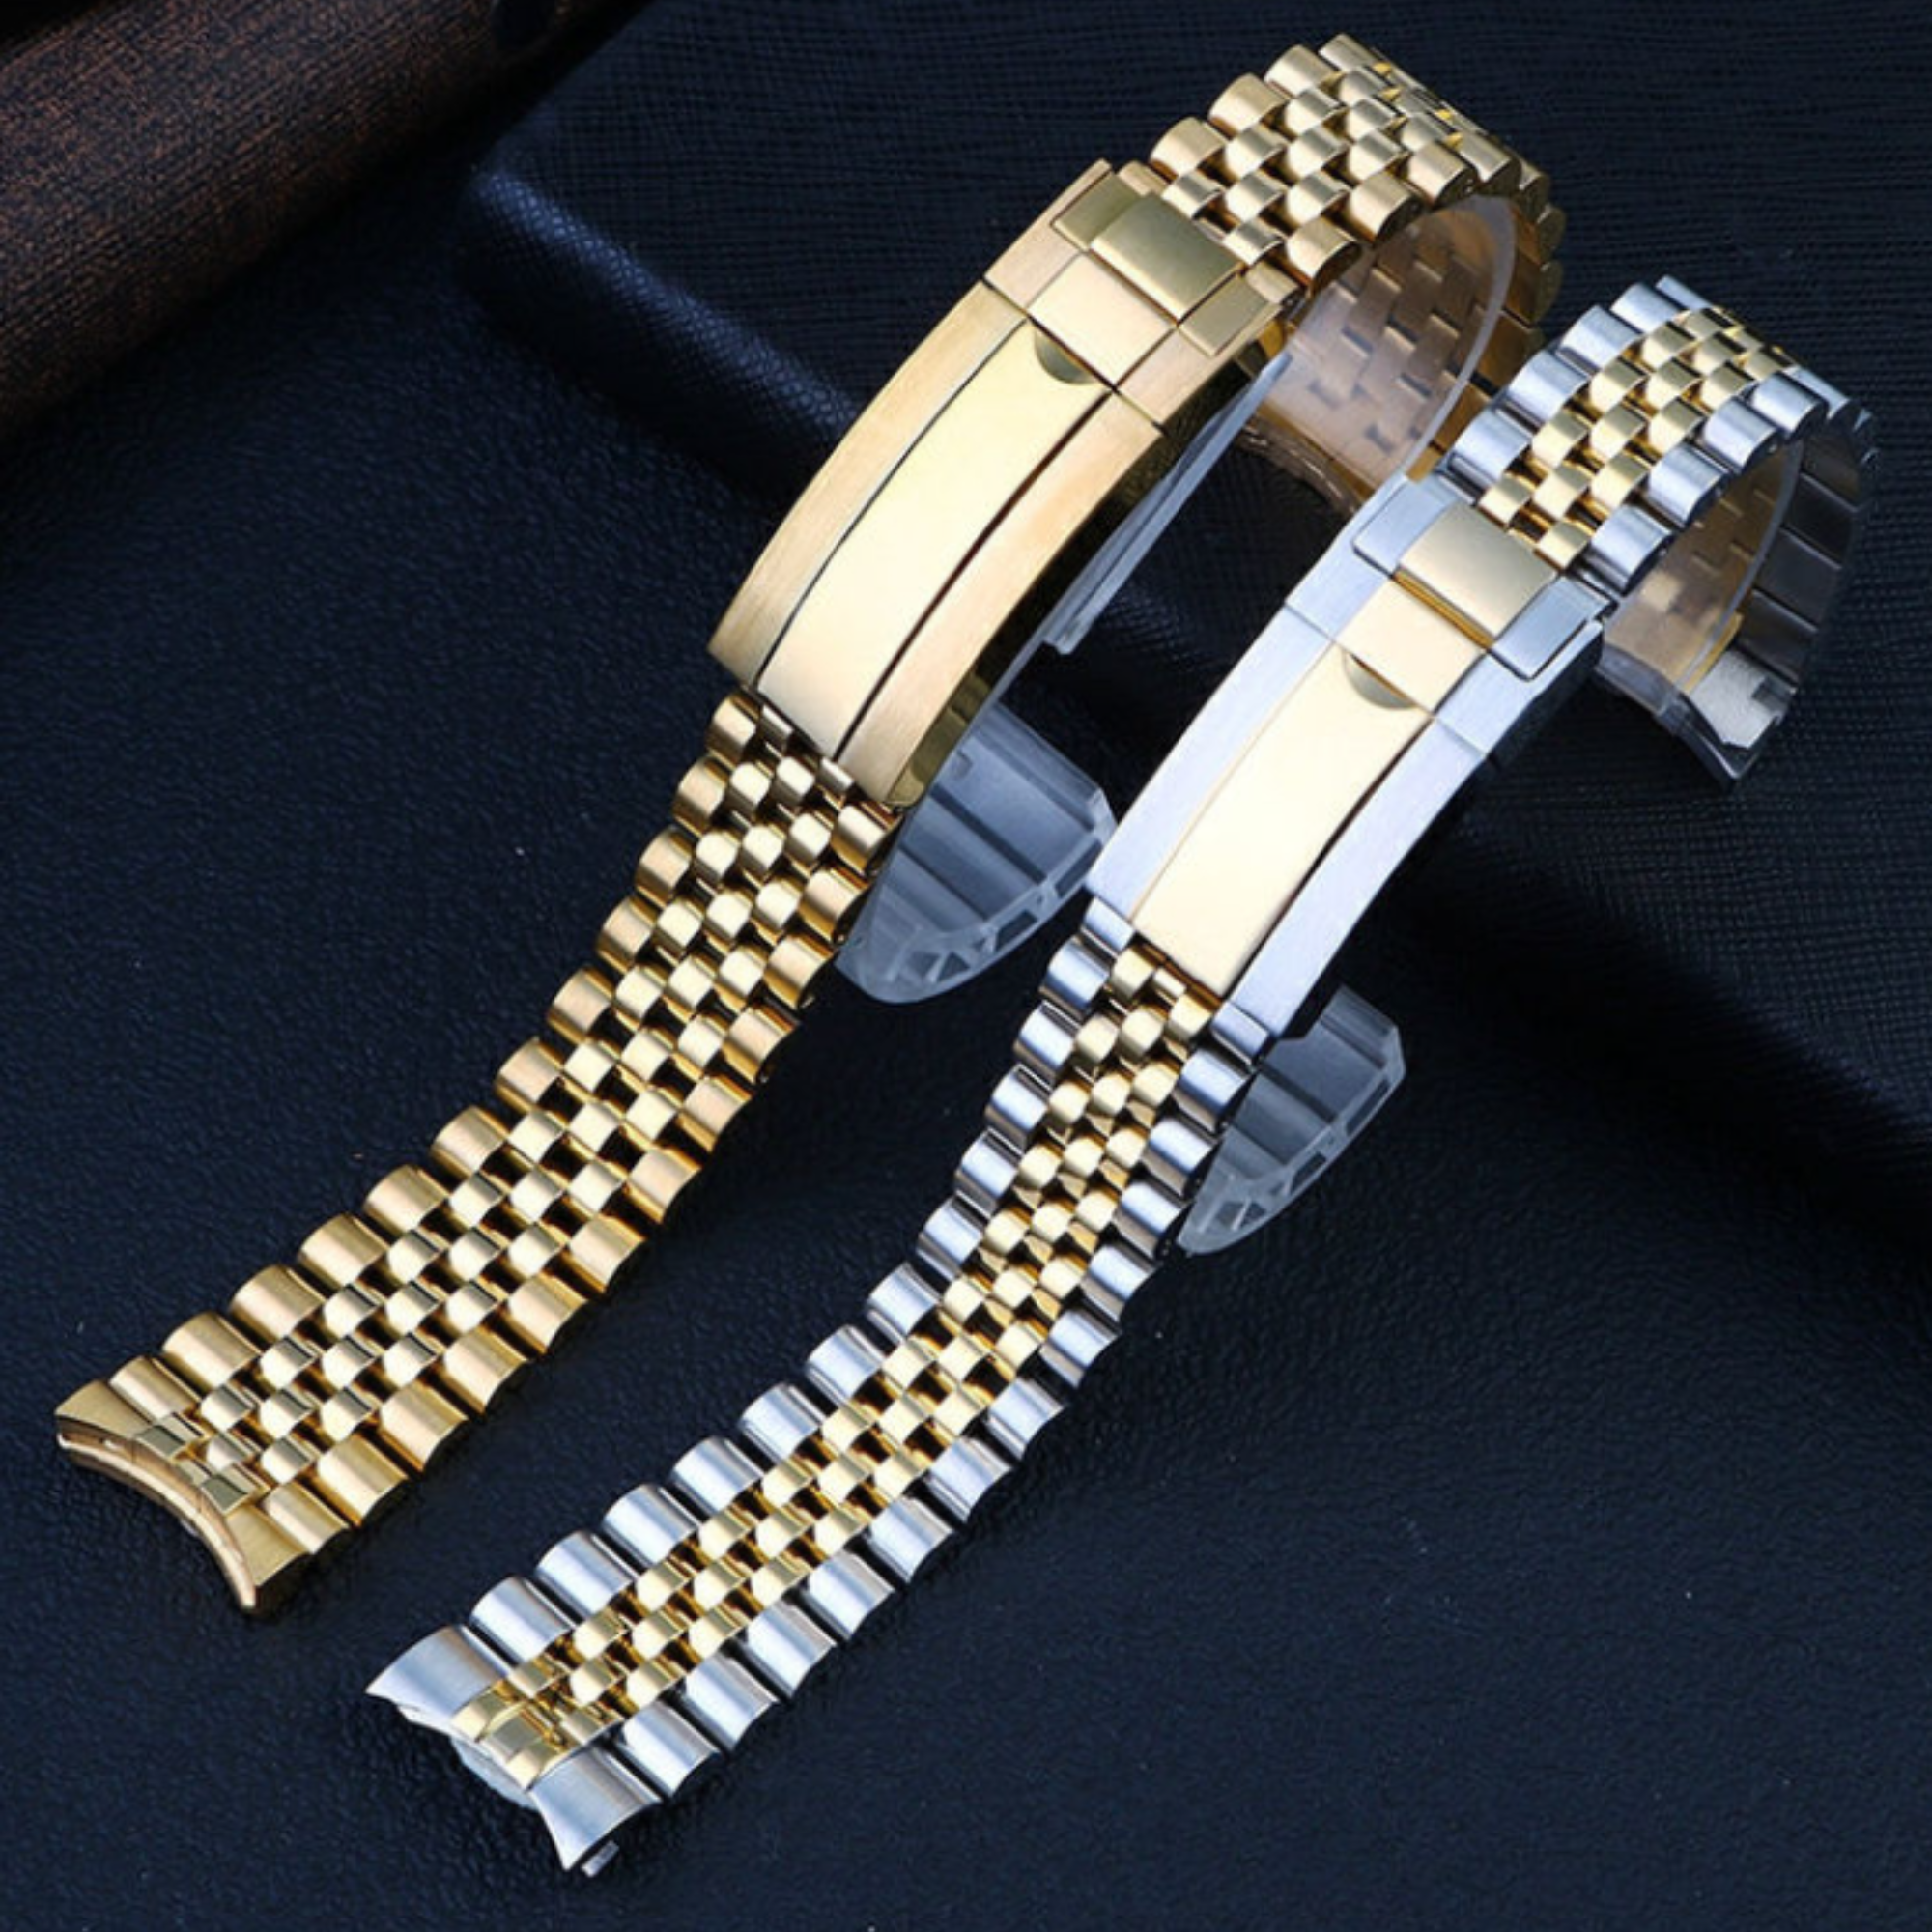 20mm Stainless Steel Vintage Jubilee Watch Band Wristband Bracelet Strap - Golden steel jubilee watch bracelet strap india dream watches